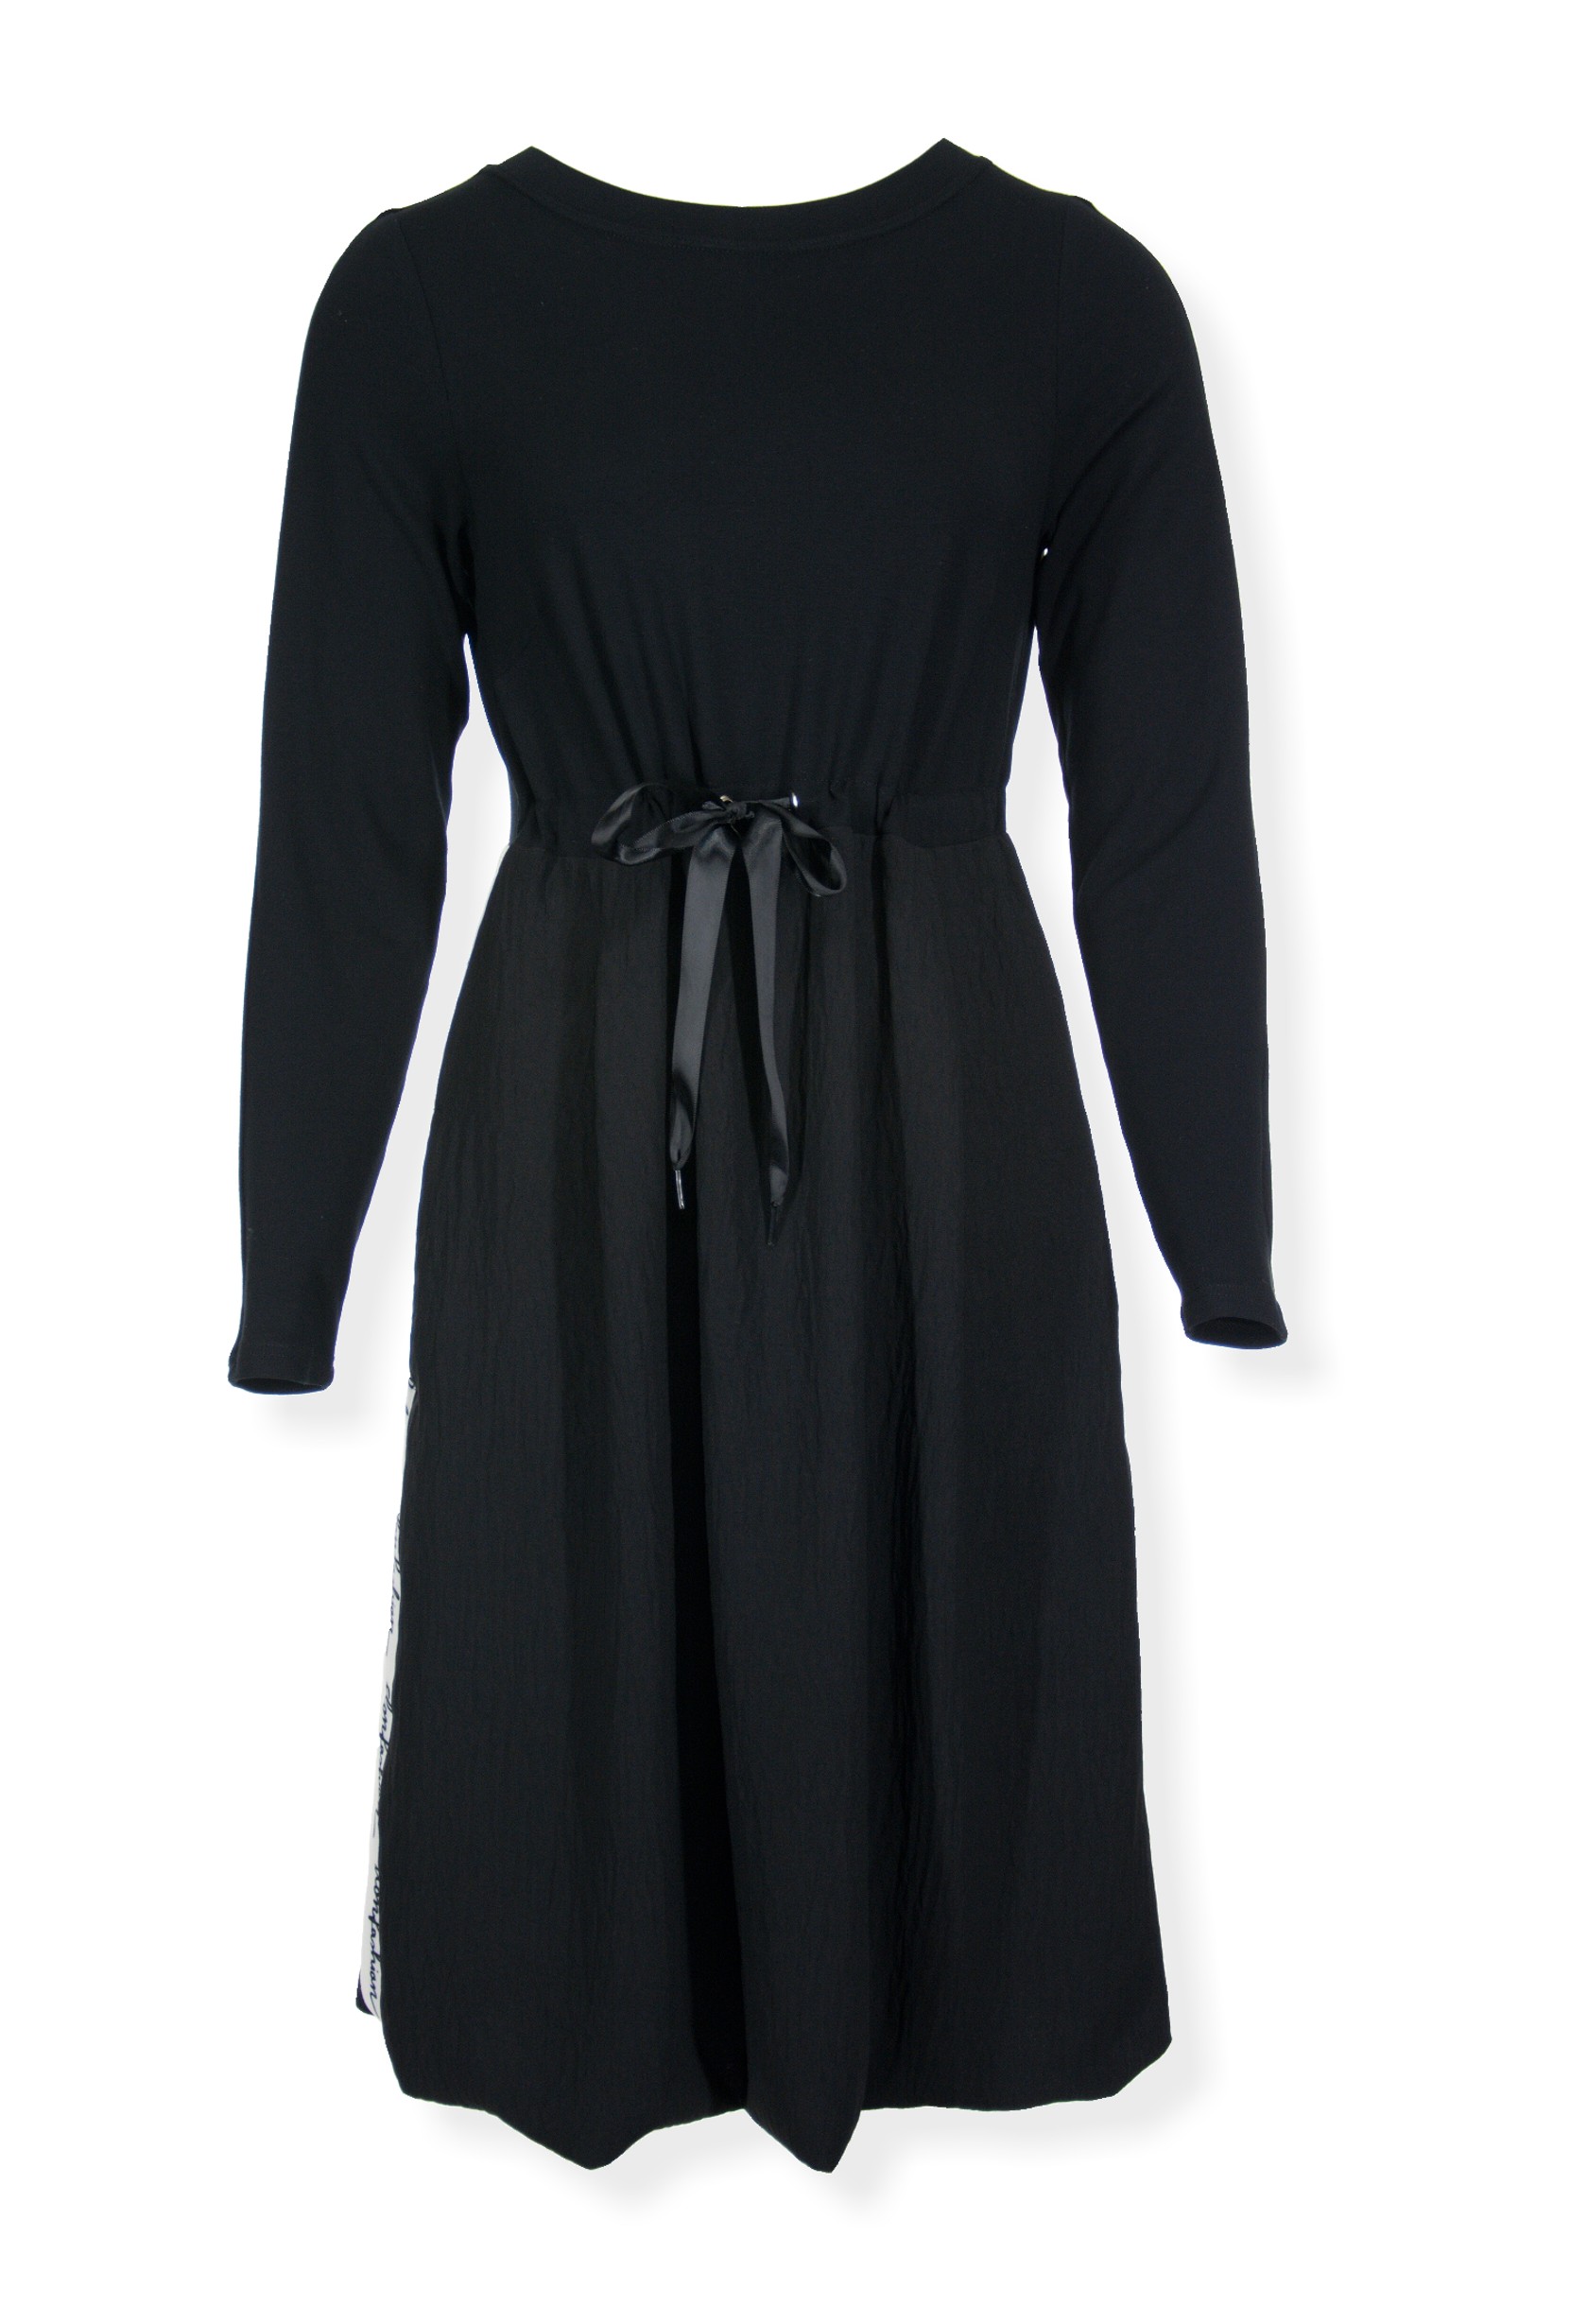 Šaty s dlouhým rukávem černé s lampasem